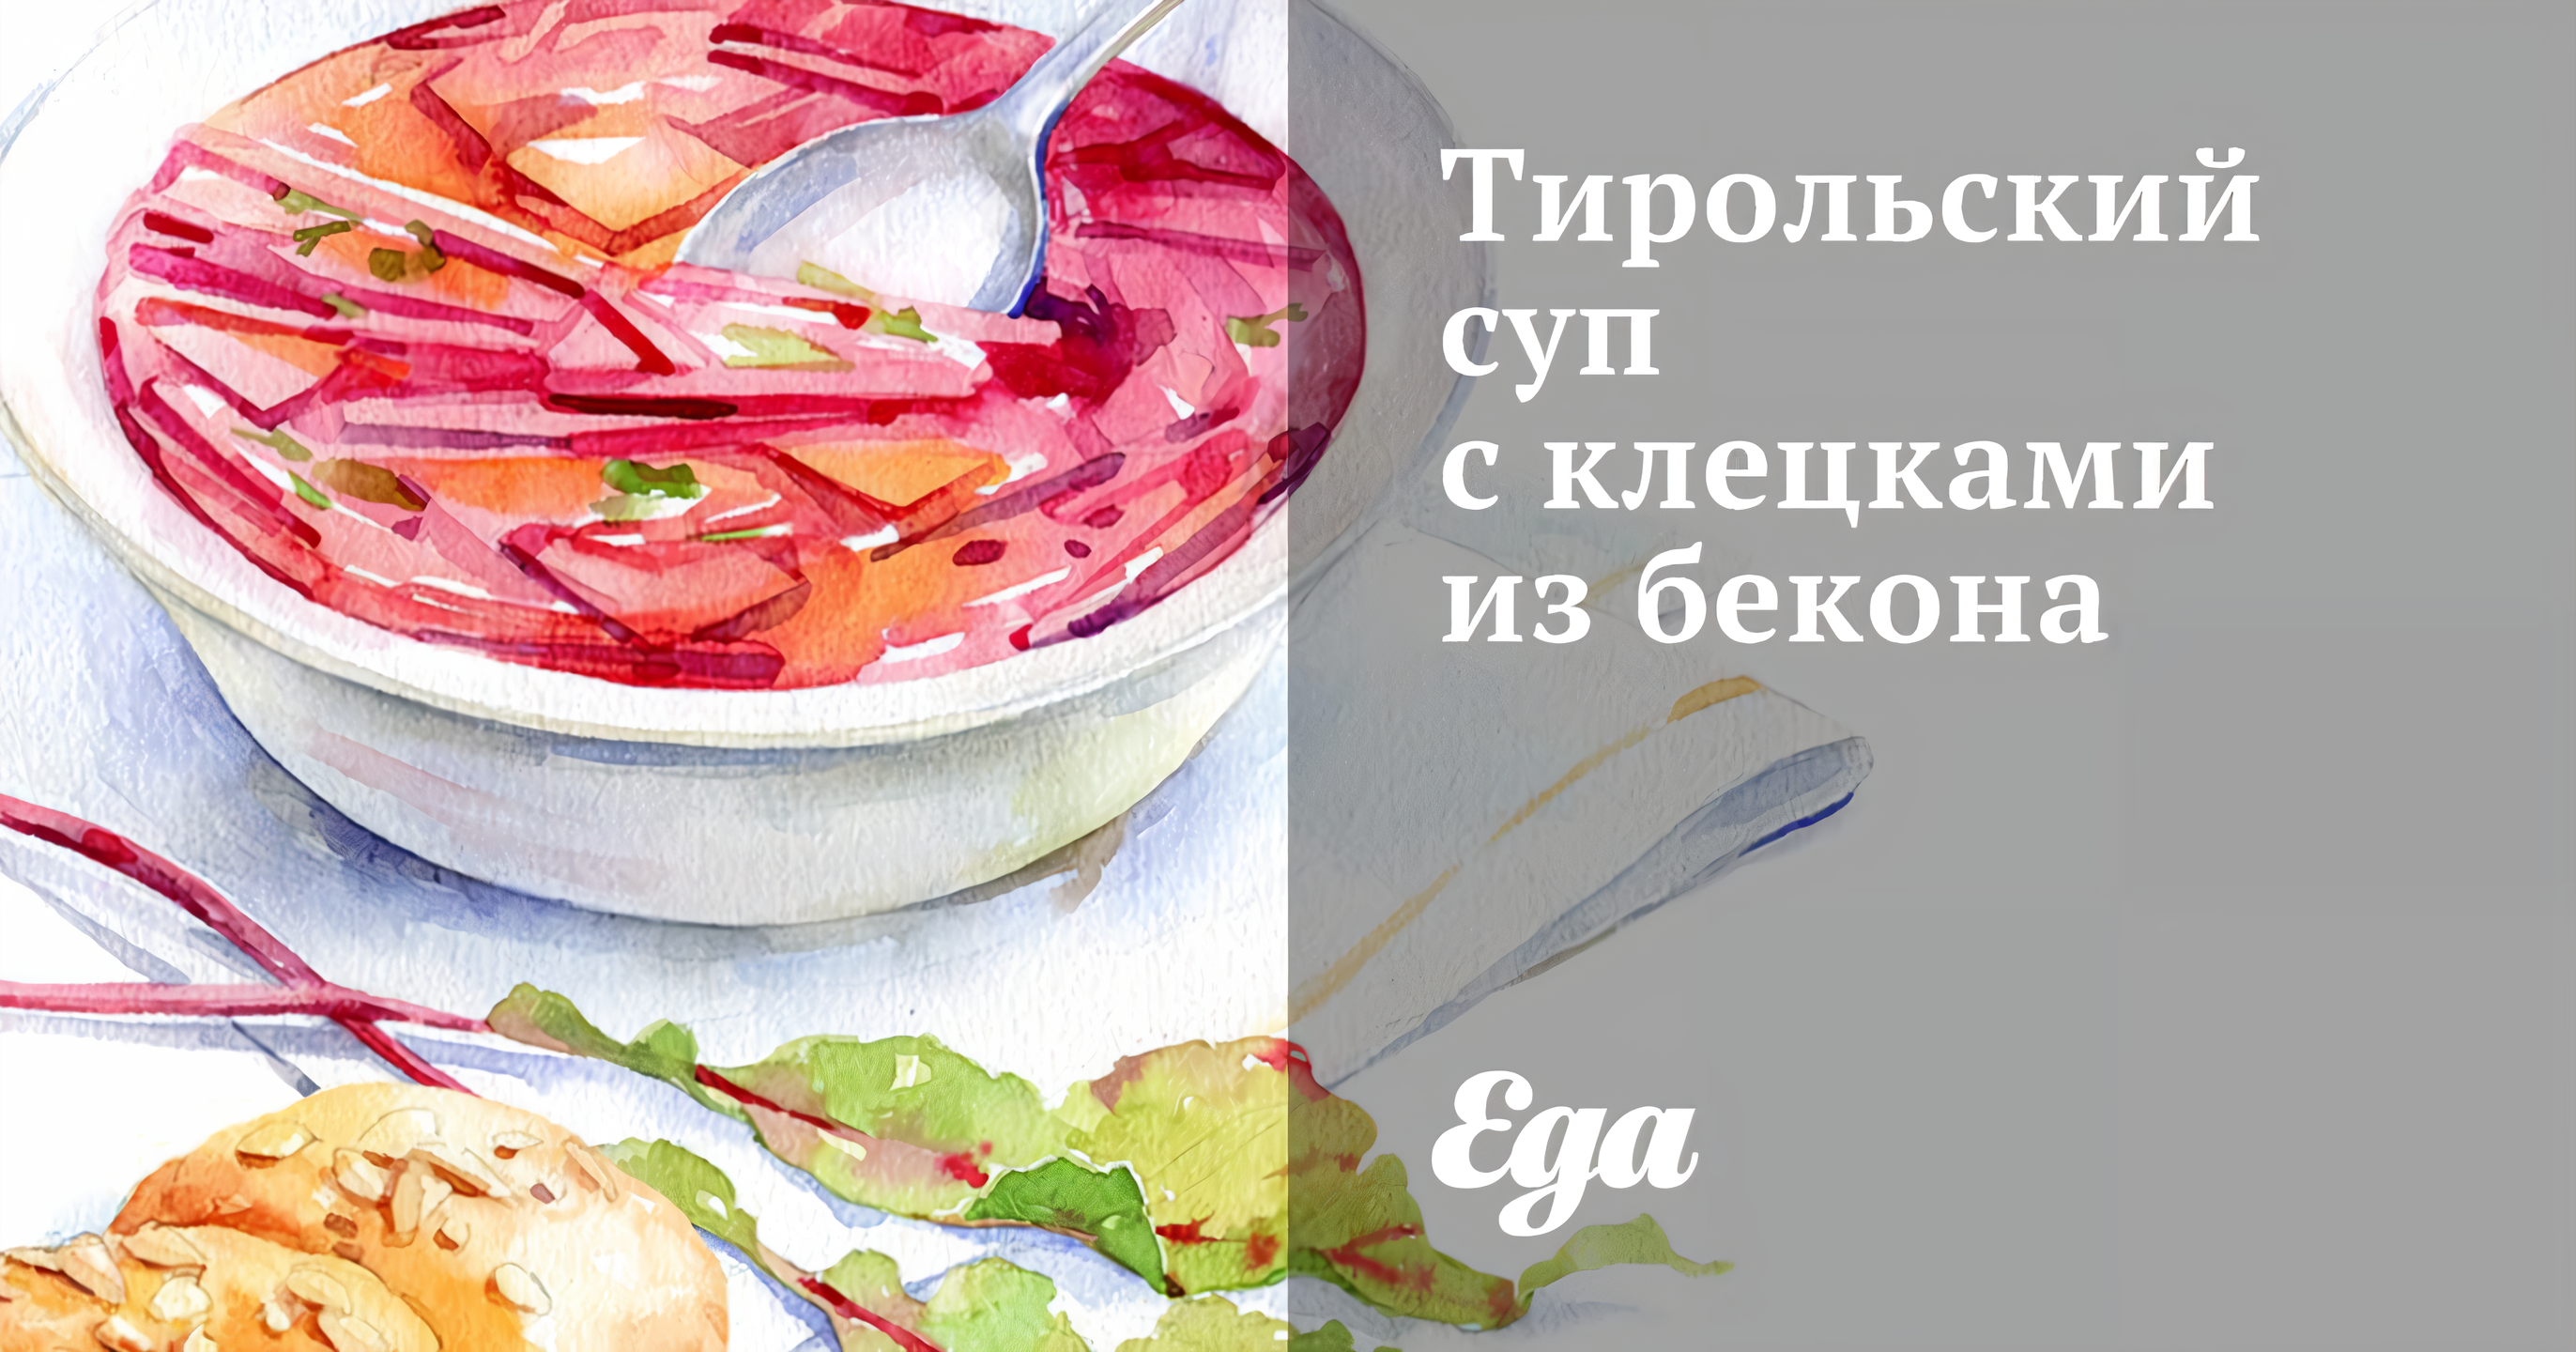 Суп-лапша с клецками из свиной печени рецепт – Чешская кухня: Супы. «Еда»